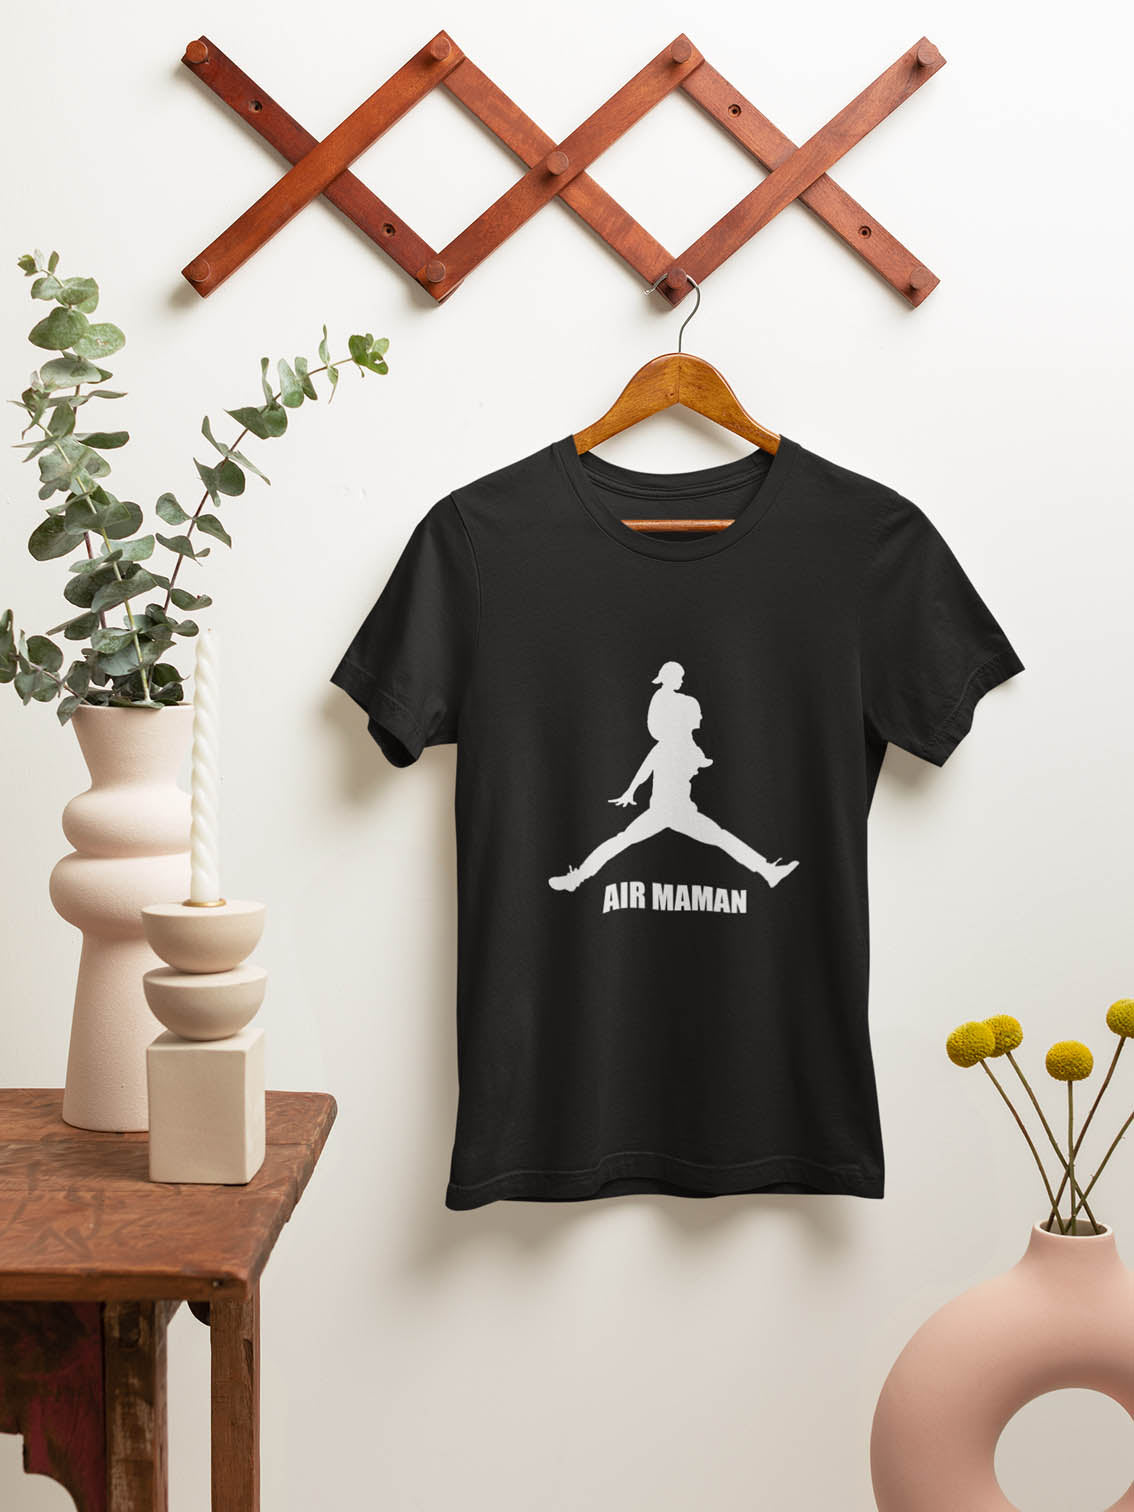 "Air Maman" women's/mother's t-shirt 